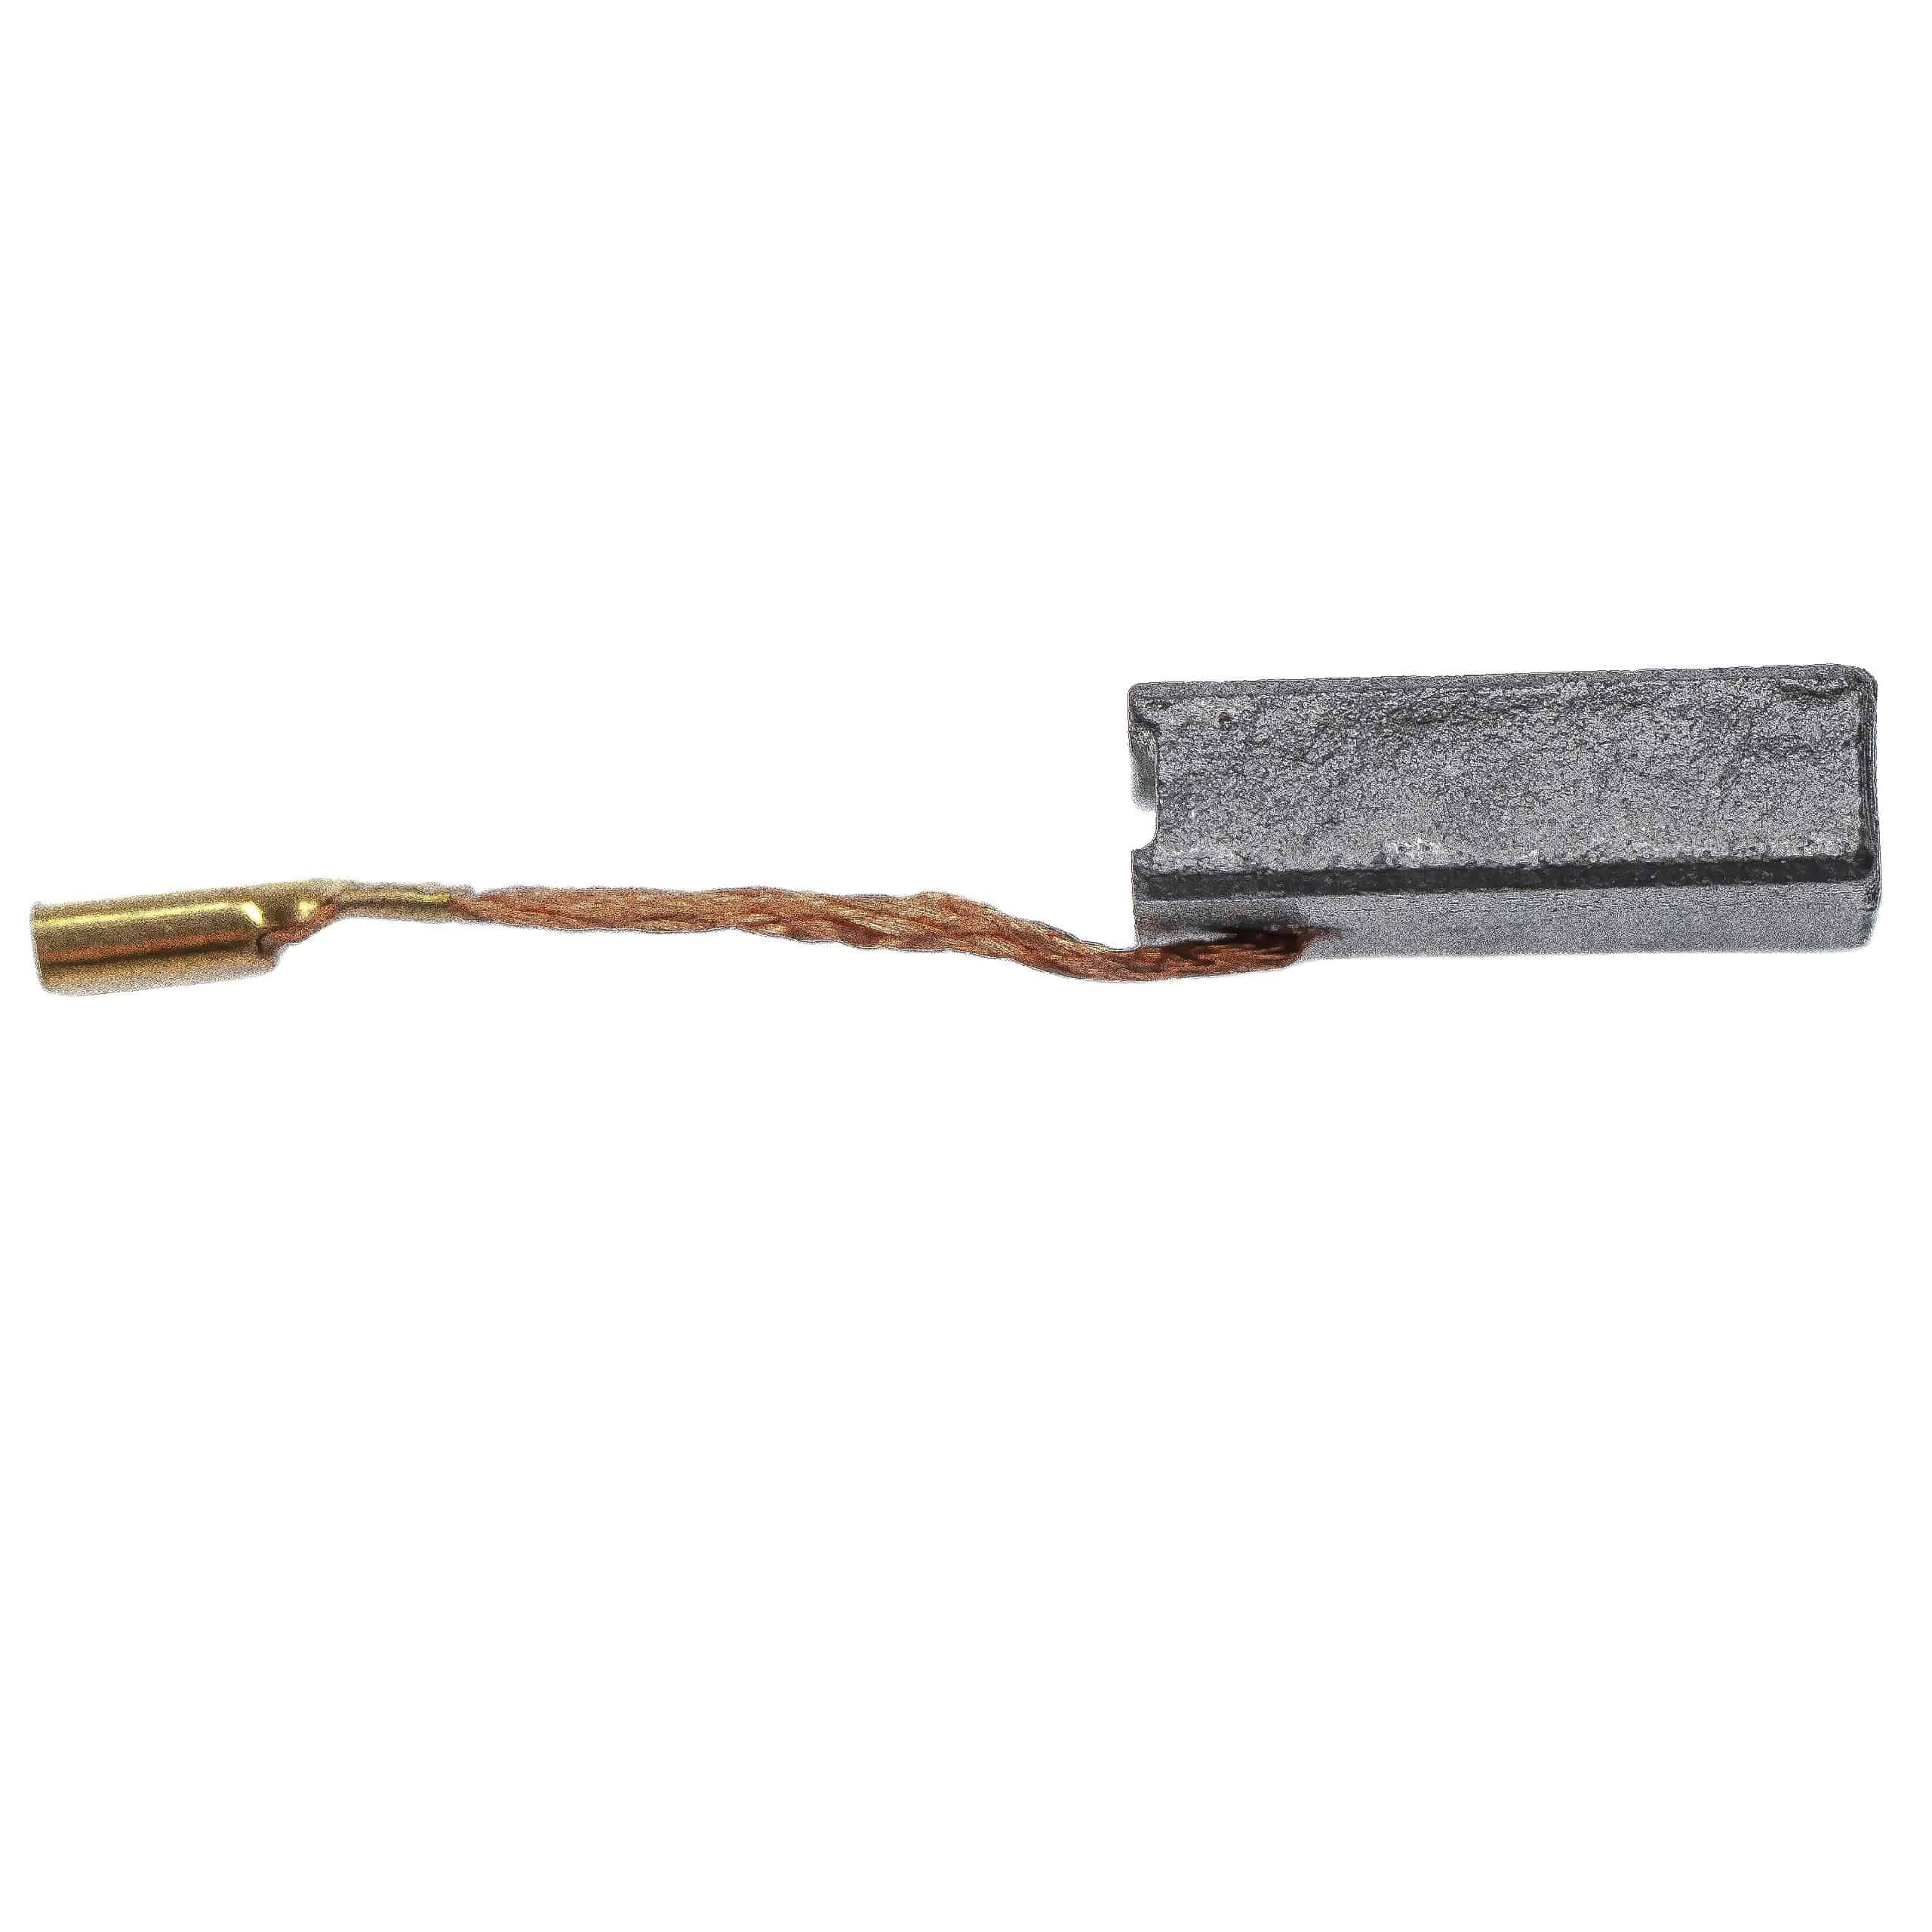 2x Kohlebürsten passend für HiltiAG 125-S Elektrogerät + Flachsteckhülse, 5 x 10 x 16 mm